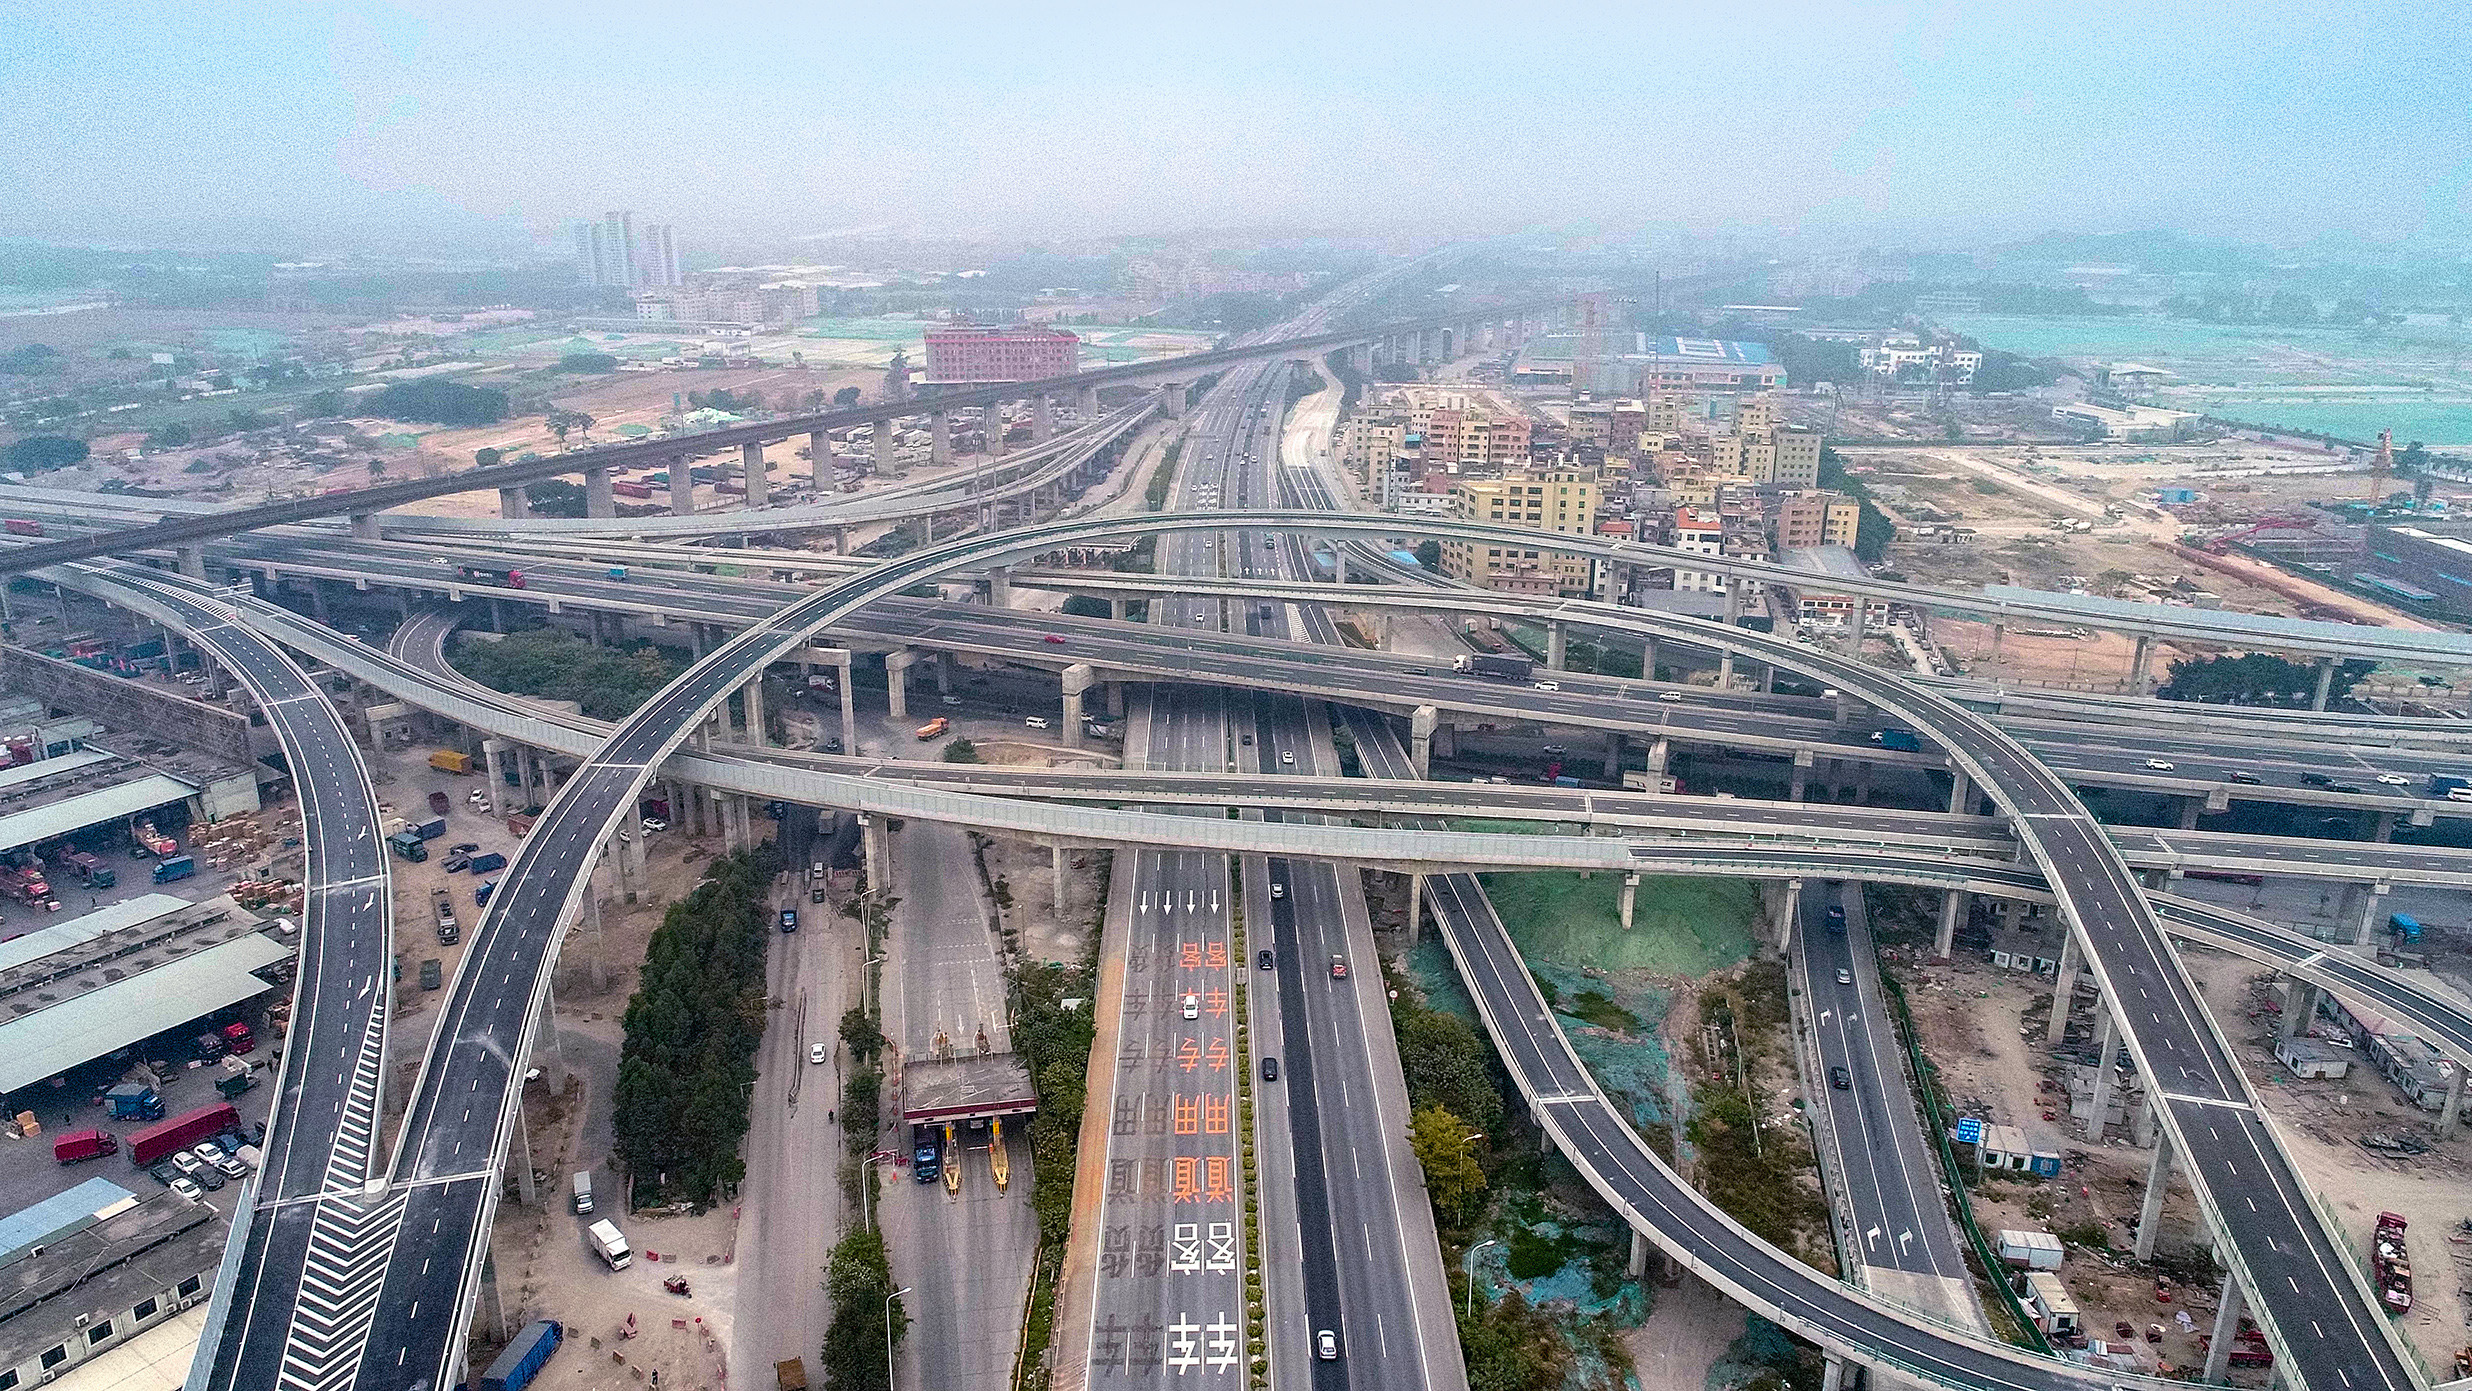 广佛肇高速广州段朝阳互通立交正式开通
（来源：南方日报，摄于2022年1月16日）